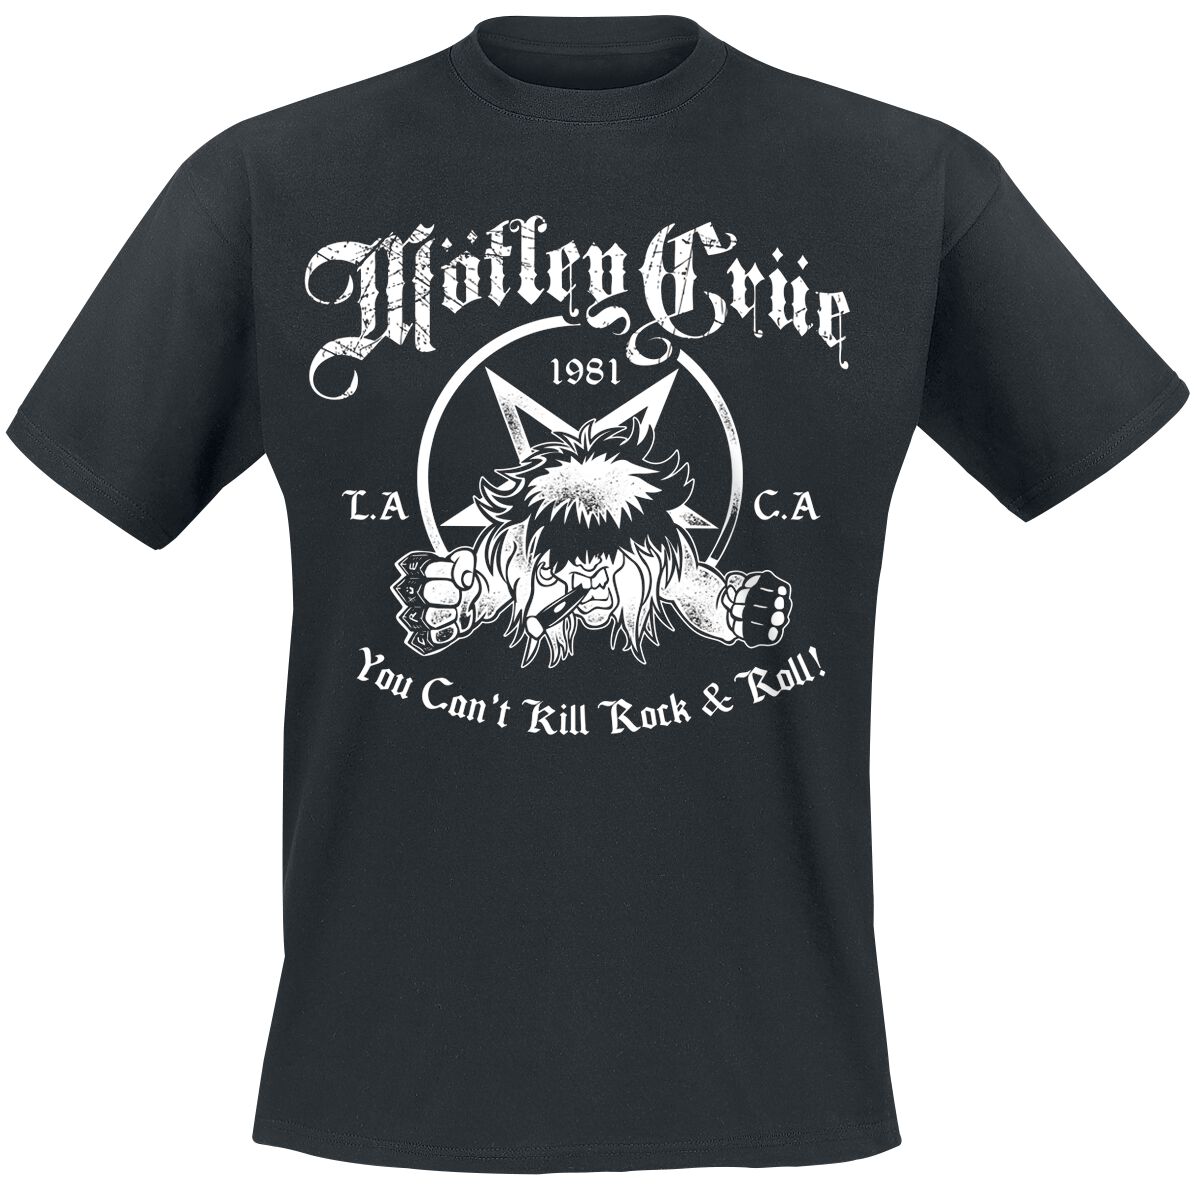 Mötley Crüe T-Shirt - You Can`t Kill Rock`n Roll - S bis XXL - für Männer - Größe XL - schwarz  - Lizenziertes Merchandise!